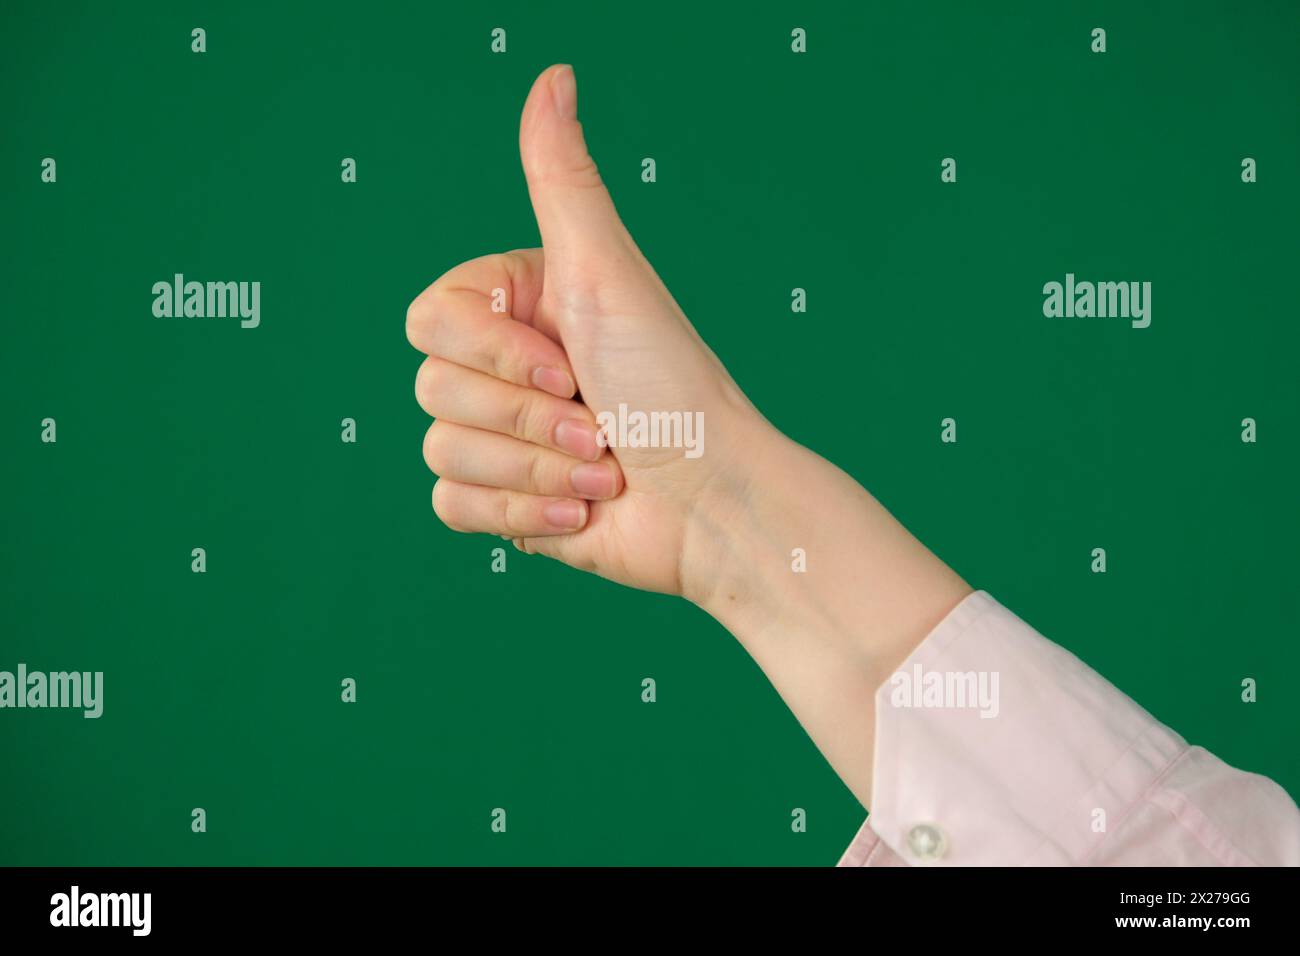 Ausdruck von Emotionen mit Händen nicht erkennbar Menschen Hände Handflächen Finger nah oben auf grünem Hintergrund chromakey Gefühle. Daumen der Menschenhand. Isoliert Stockfoto